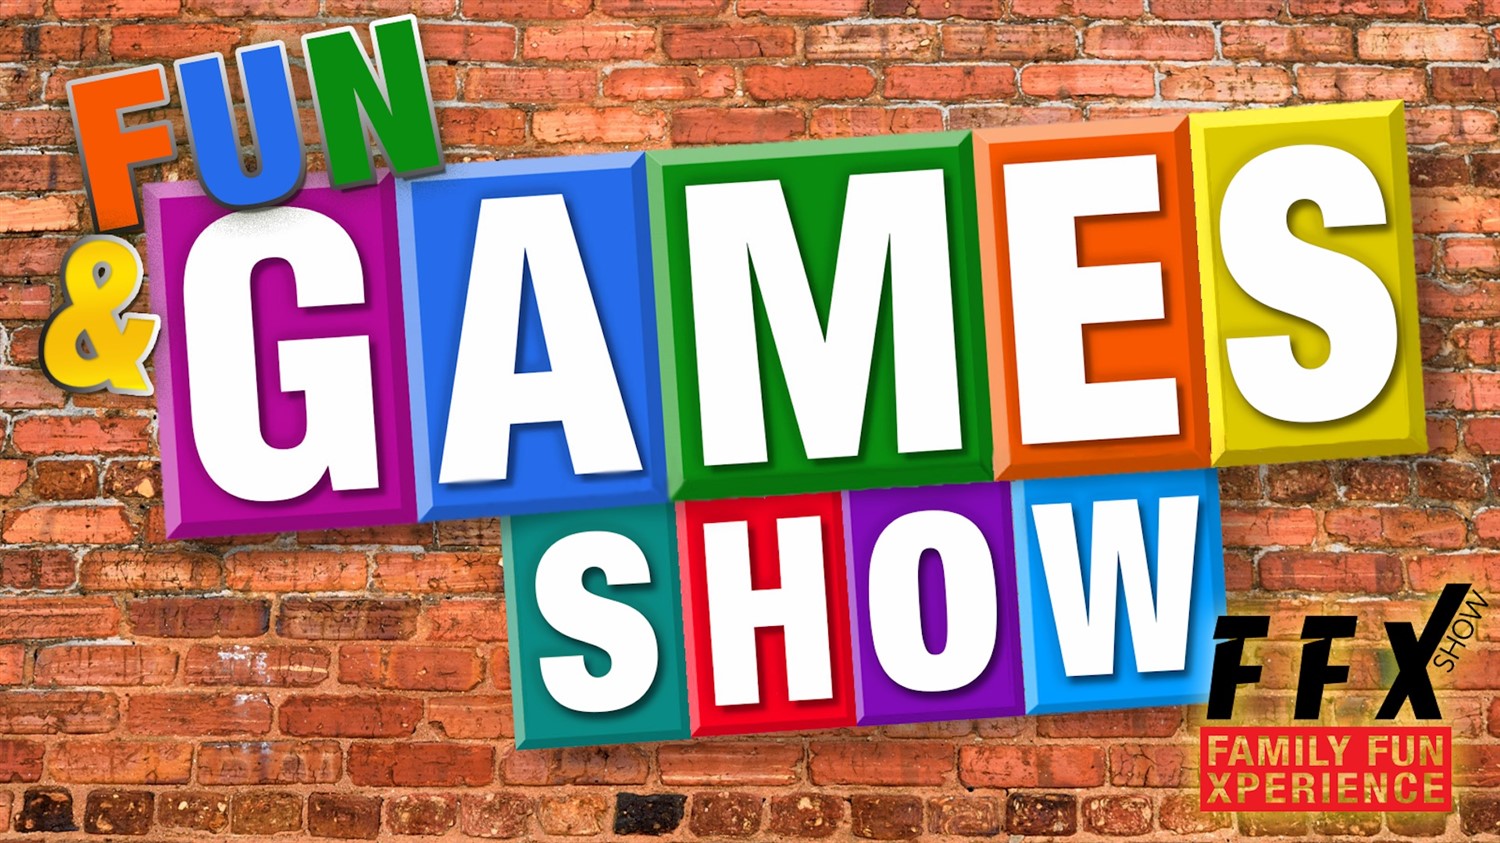 FUN & GAMES SHOW! 5-Star Interactive live audience Xperience! on feb. 17, 19:00@FFX Theatre - Elegir asientoCompra entradas y obtén información enFamily Fun Xperience tickets.ffxshow.org